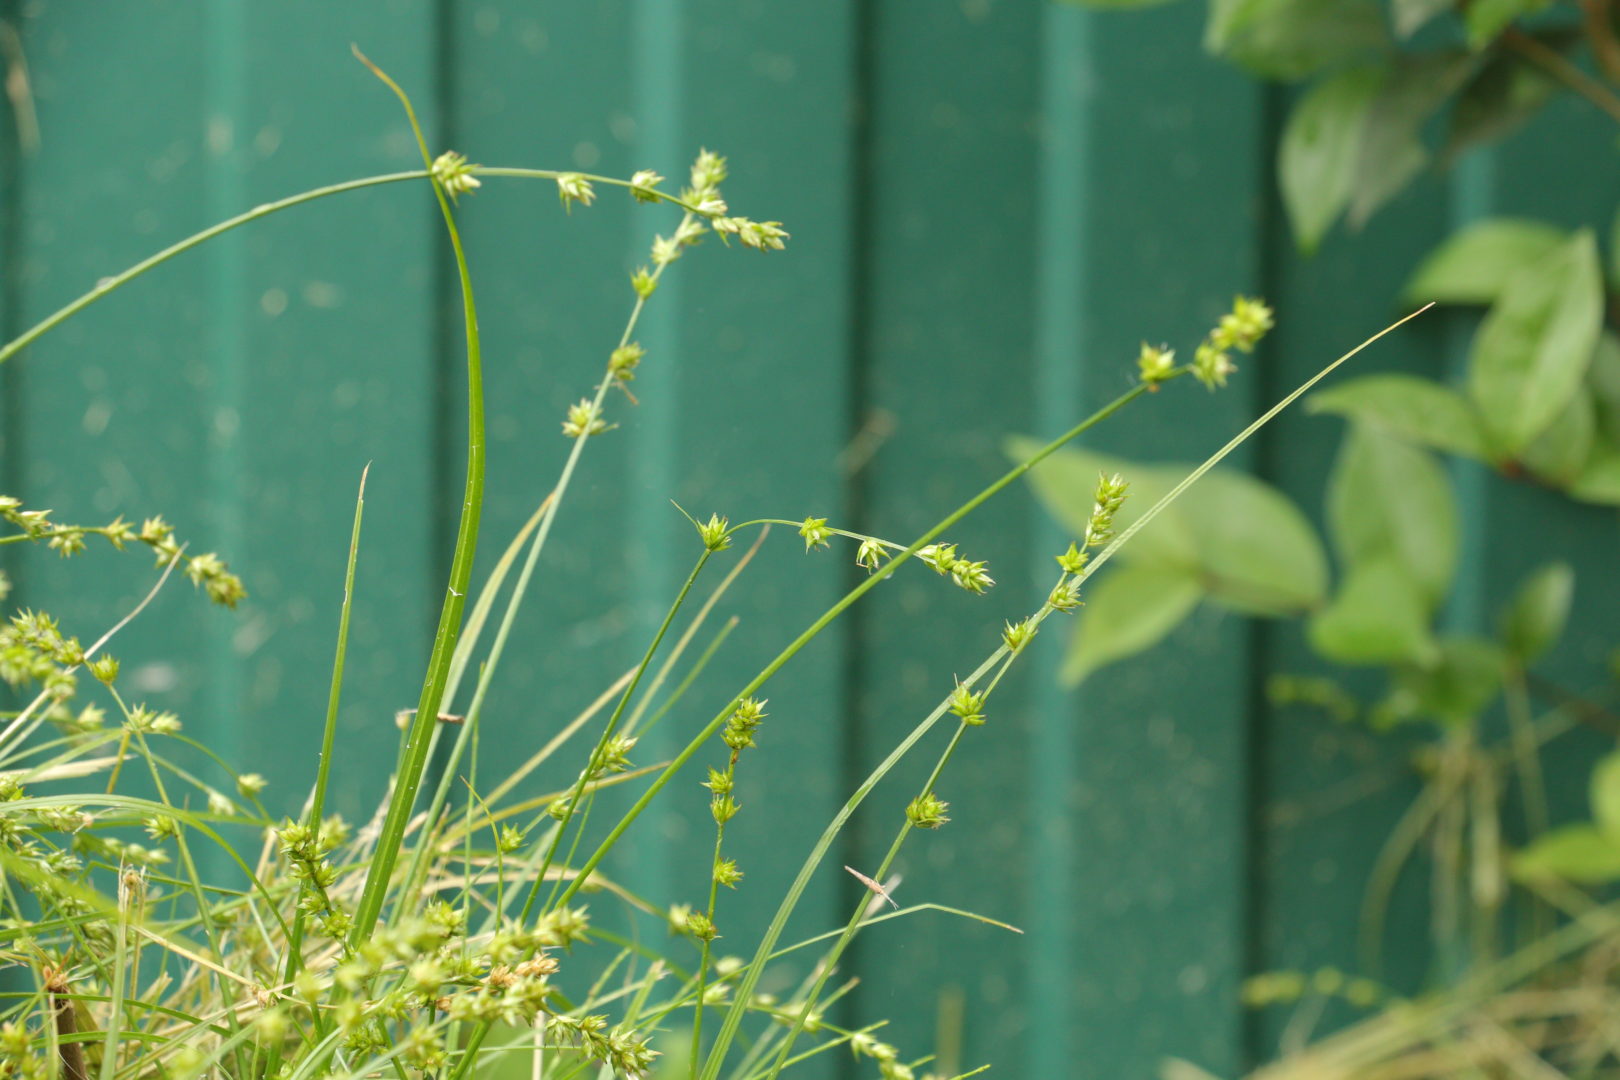 Сорная трава растет кочками - осока ежисто-колючая